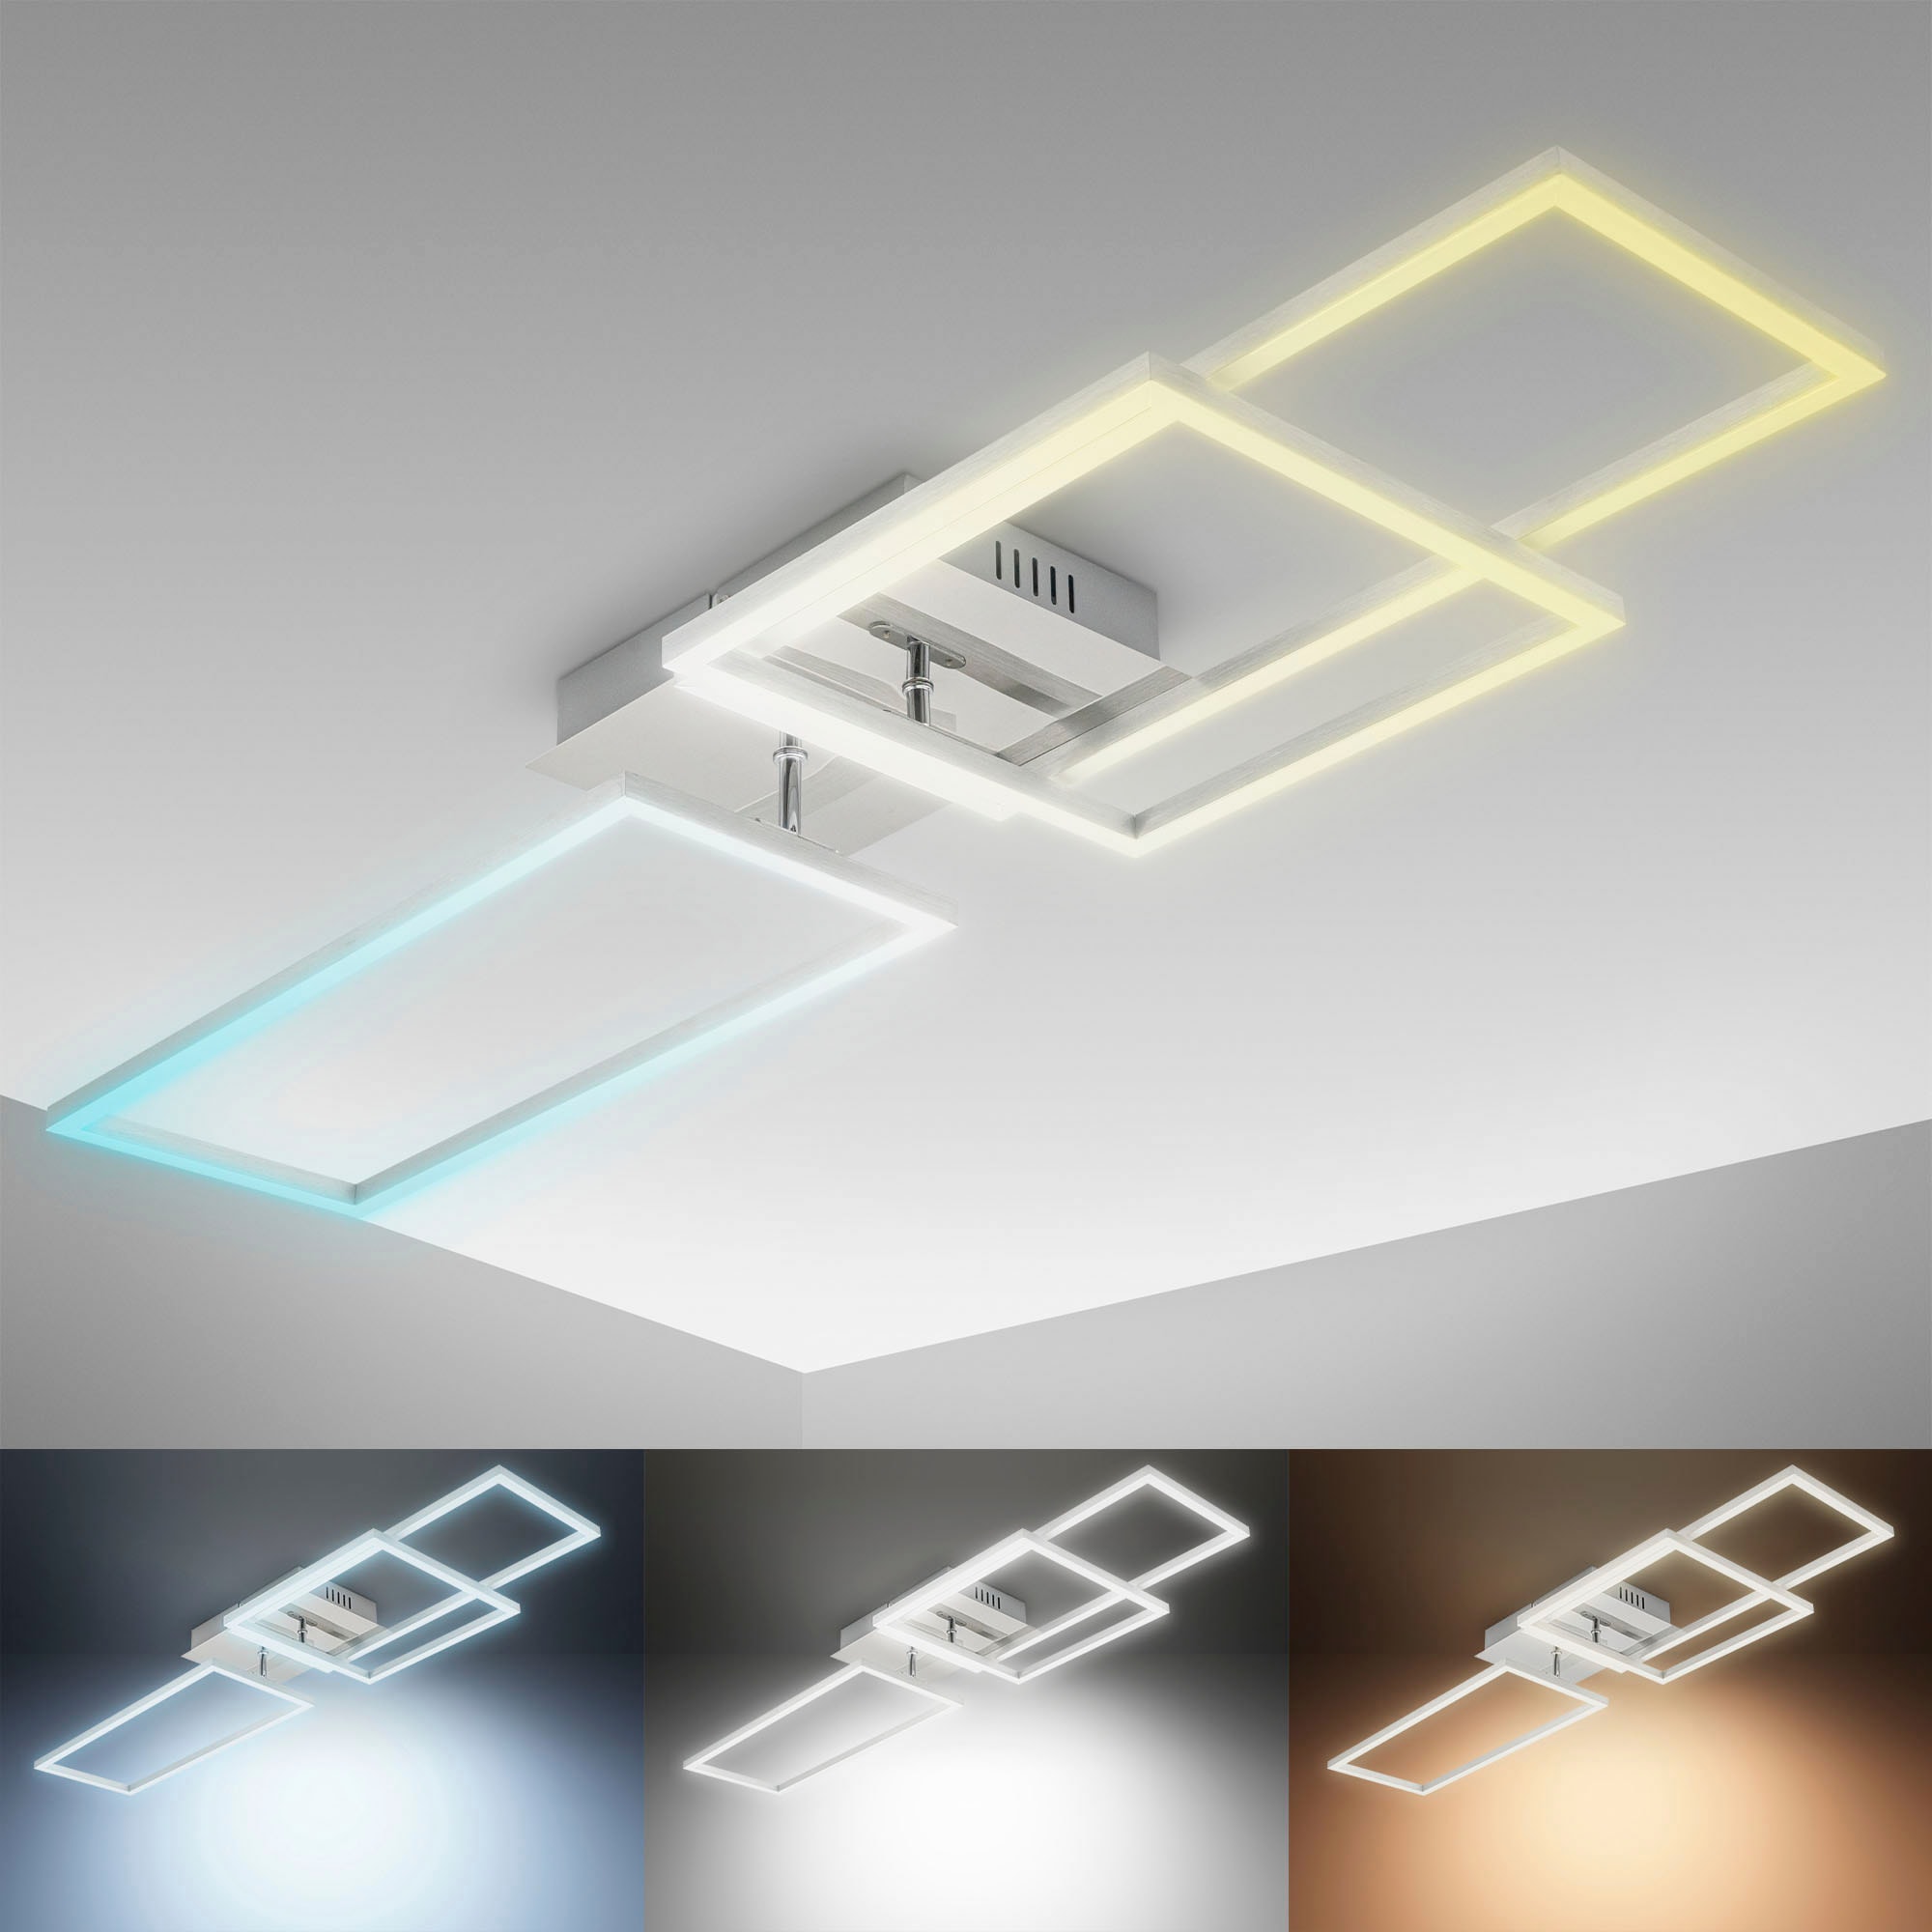 B.K.Licht LED Deckenleuchte mit Fernbedienung in gebürsteter Alu-Optik, LED-Platine  40 Watt, 4.000lm, 3.000 - 6.500K einstellbar, inkl. Nachtlicht, Timer  online kaufen